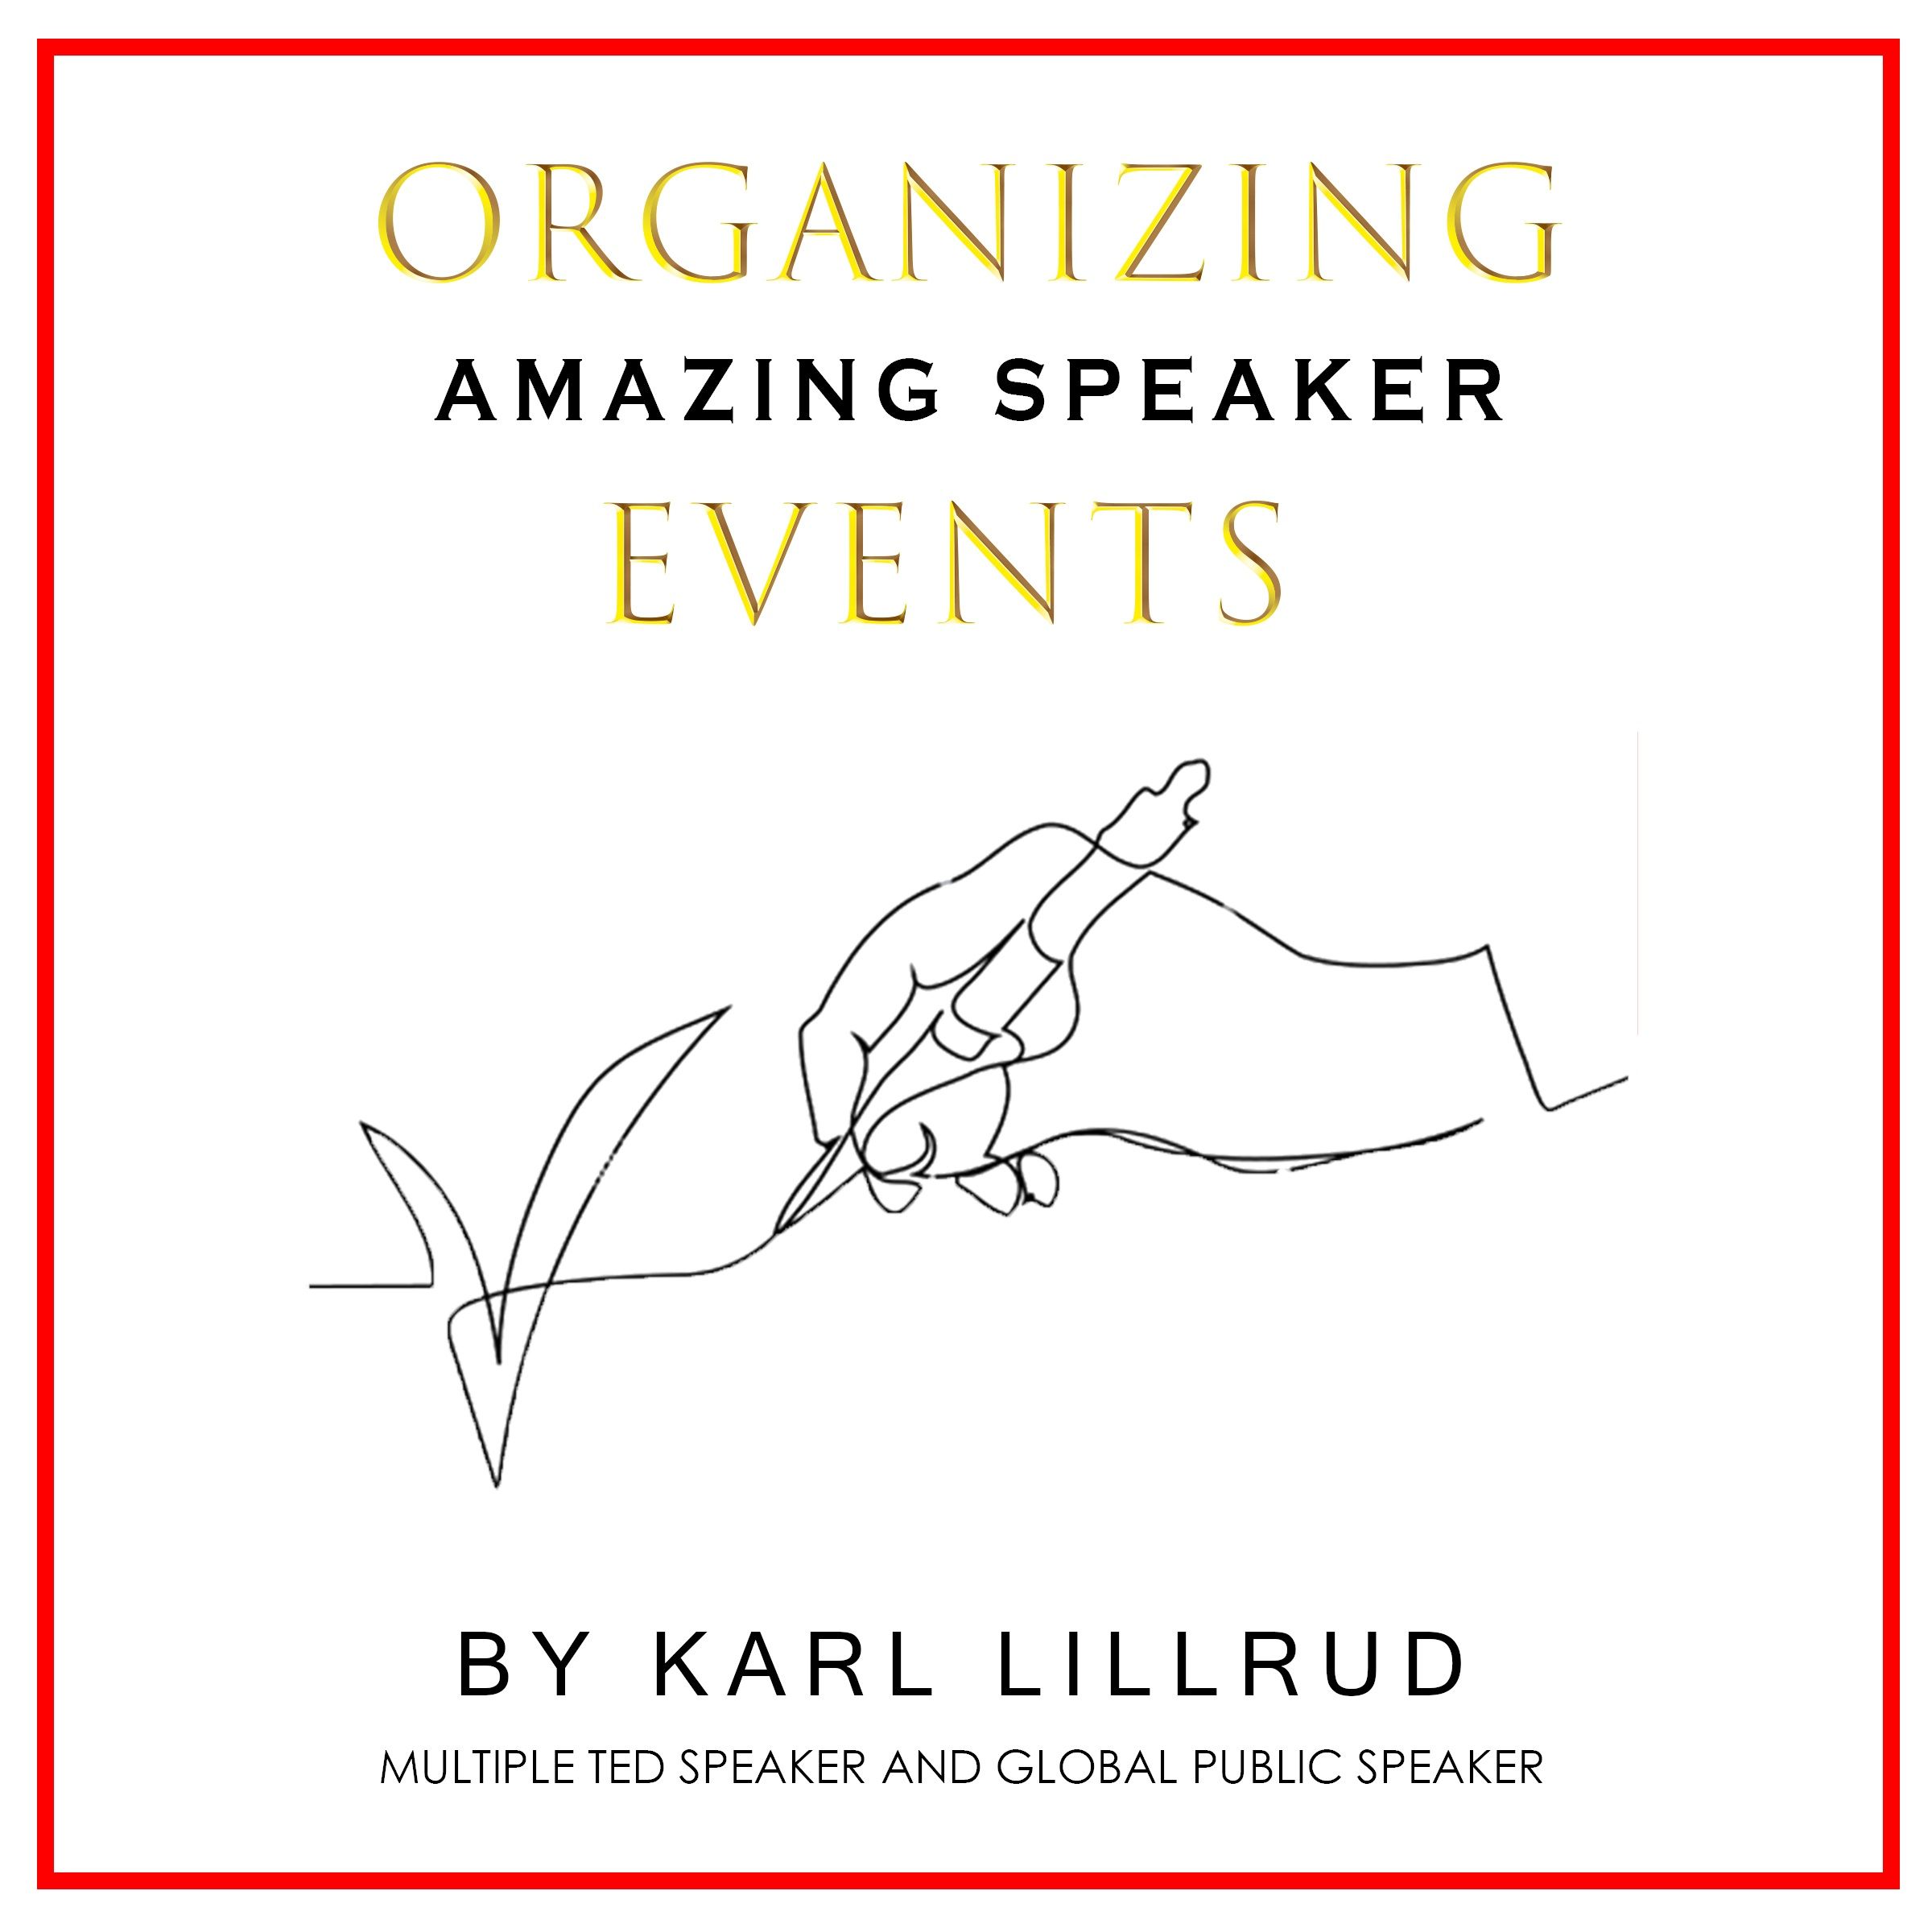 Organizing amazing speaker events, e-bok av Karl Lillrud